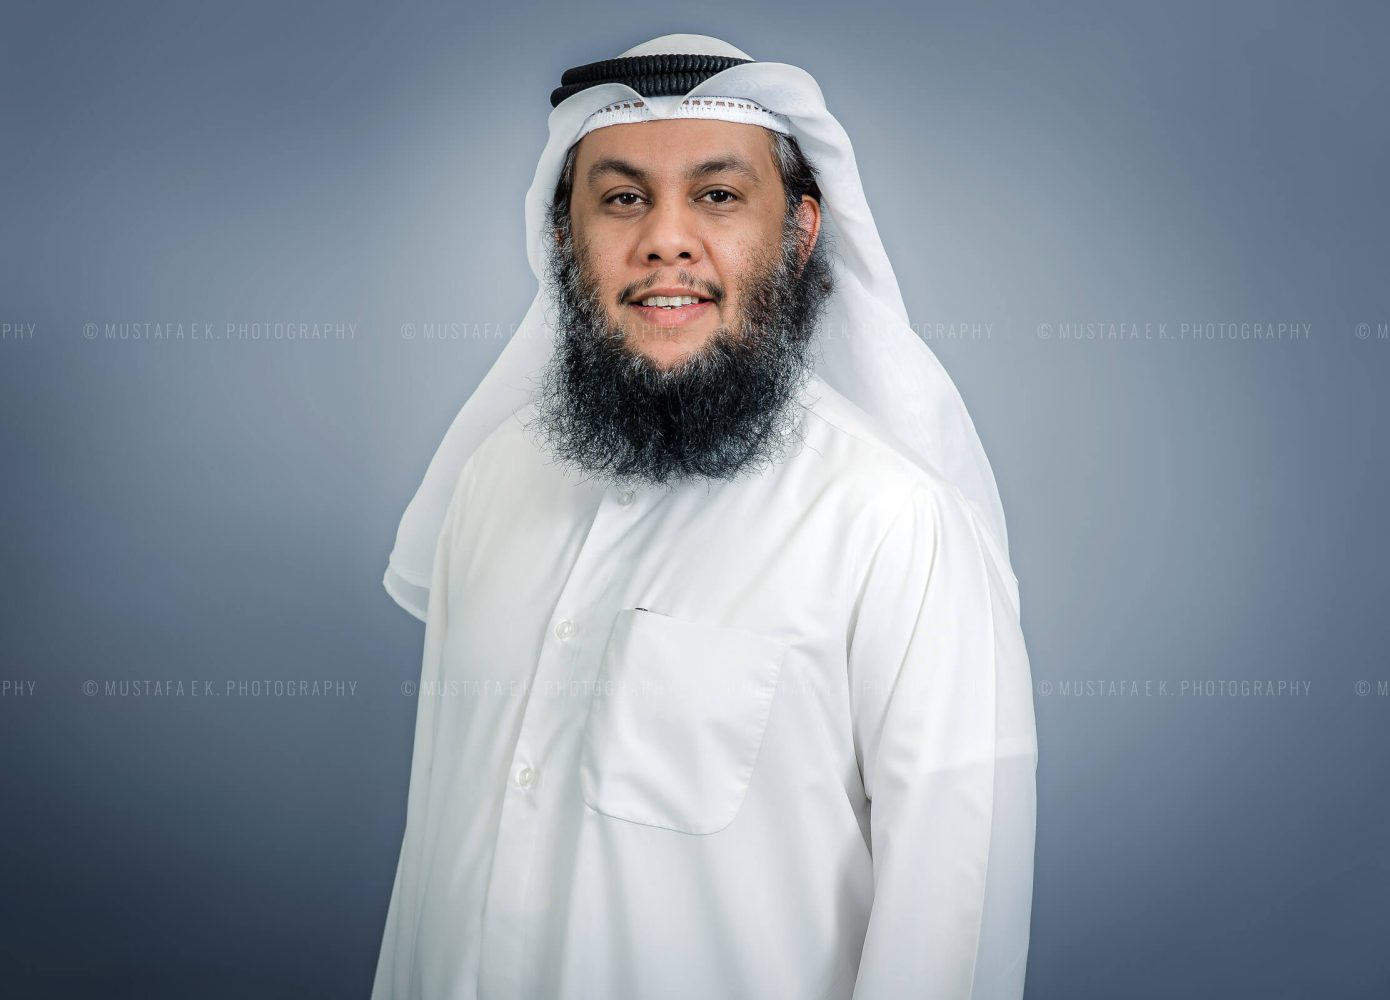 Professional Business Headshot Photographer UAE Dubai Kuwait Photography 02